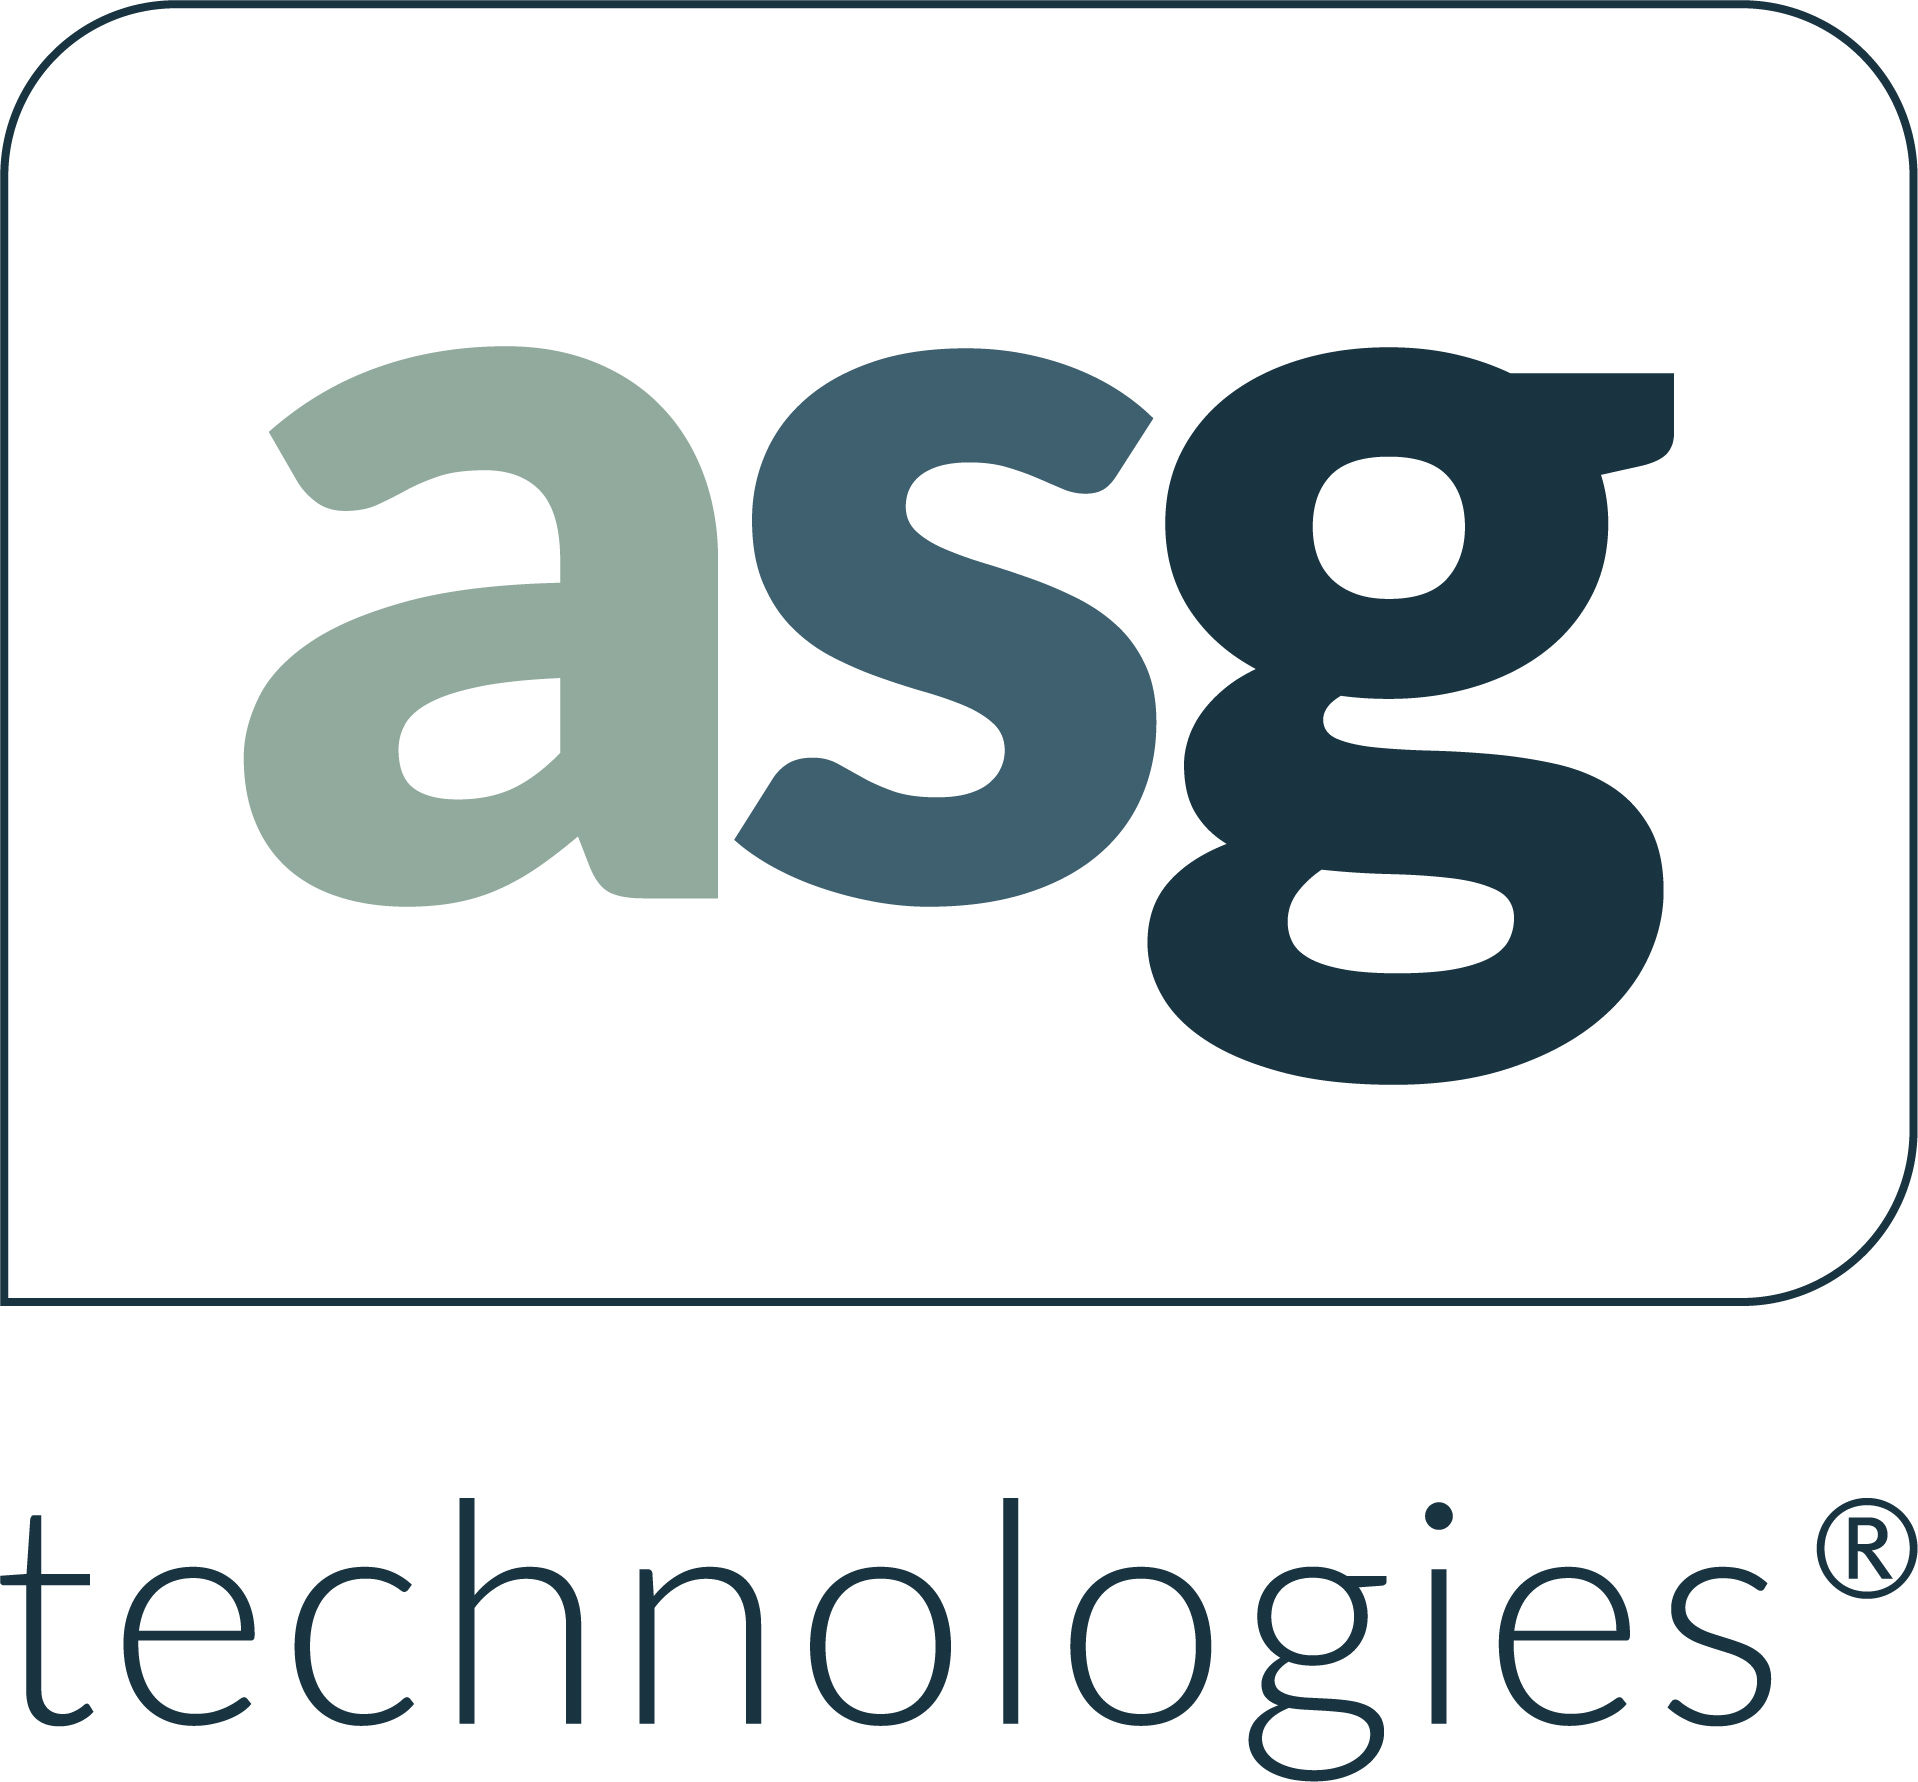 ASG 2018 logo